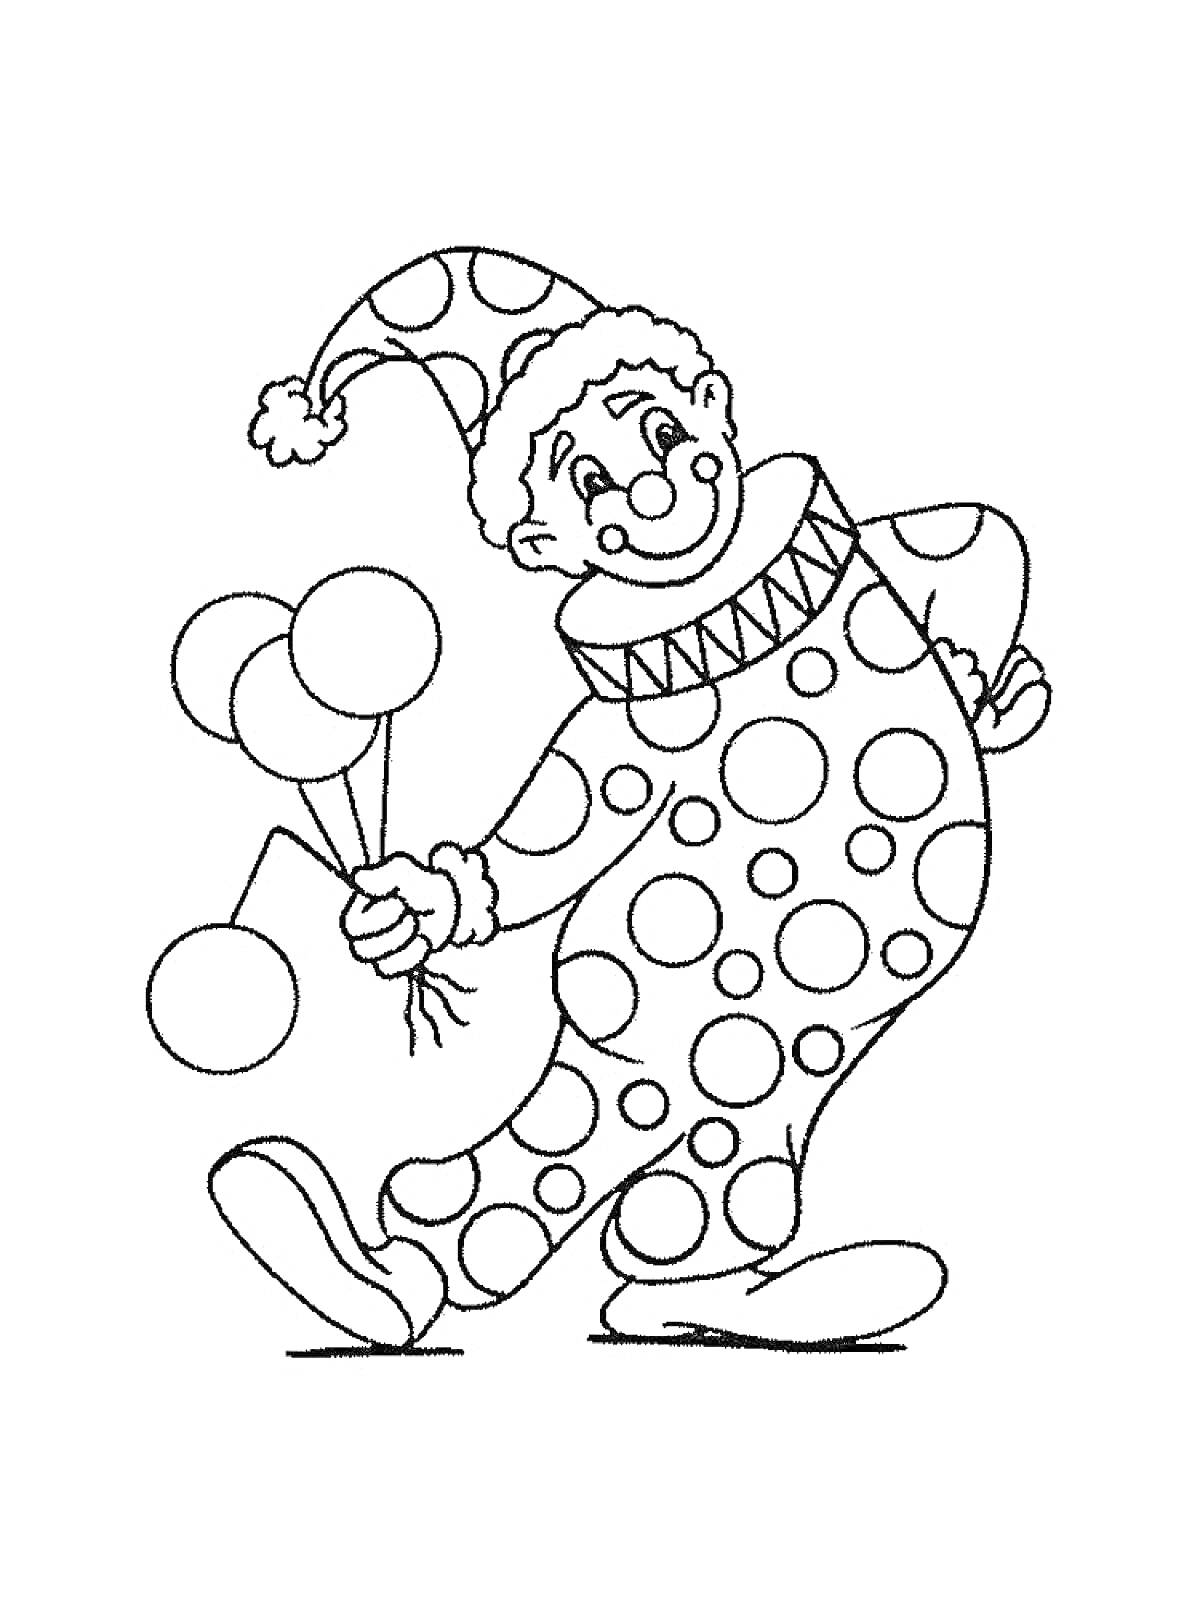 Раскраска Клоун с воздушными шарами в наряде с крупными кругами